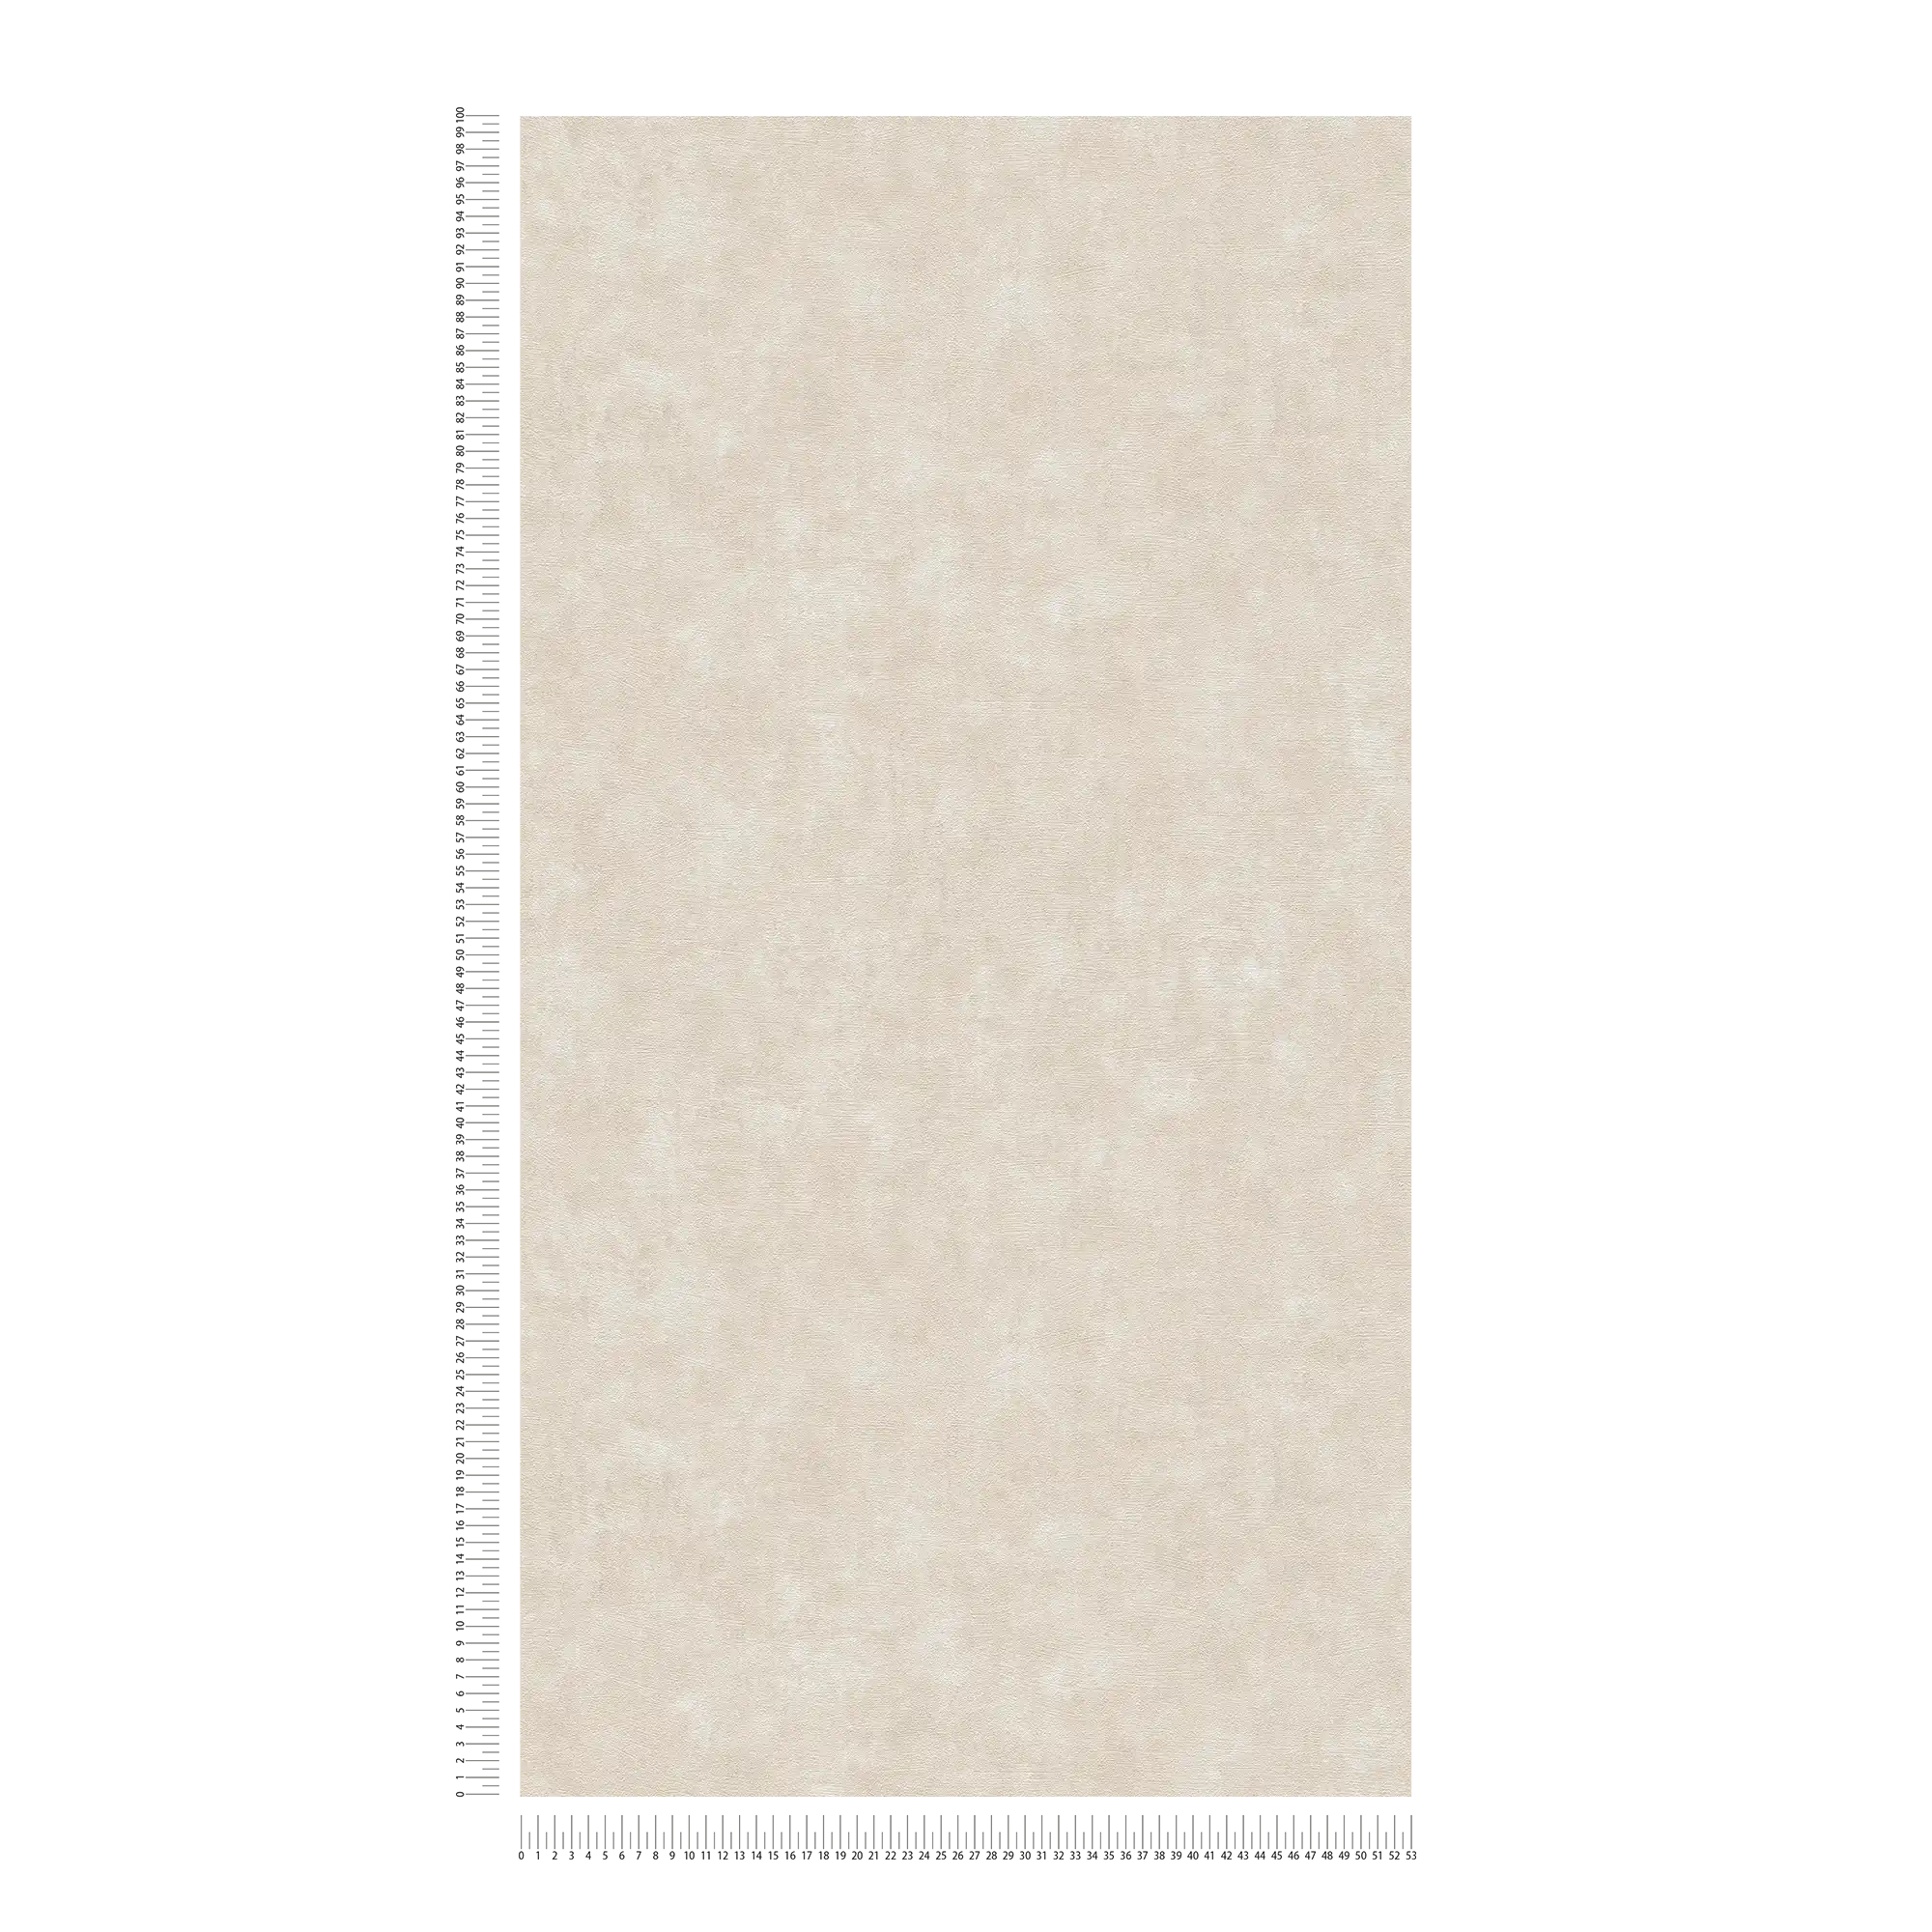             Papier peint intissé uni effet béton et texturé - crème, gris
        